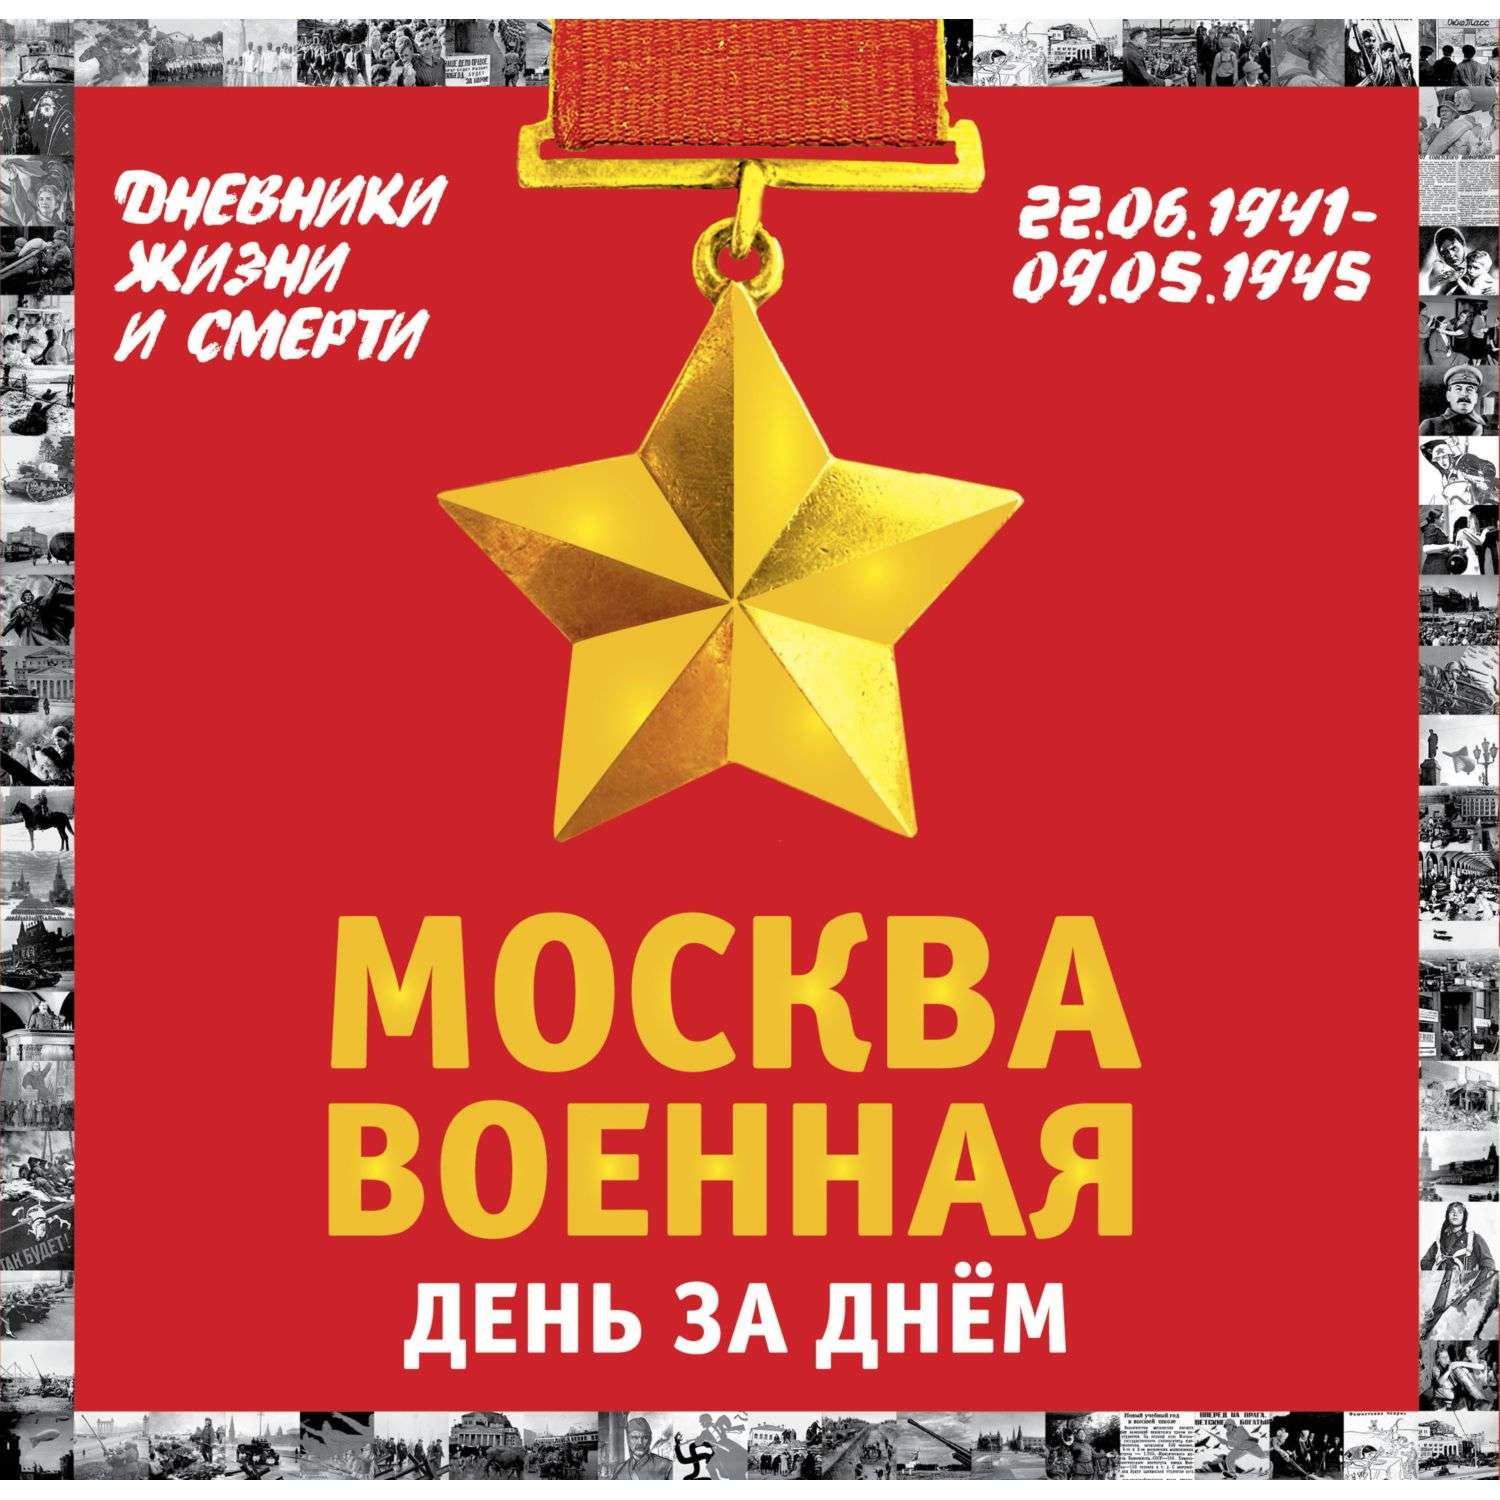 Книга Эксмо Москва военная день за днем Дневники жизни и смерти 22 июня 1941 9 мая 1945 - фото 1